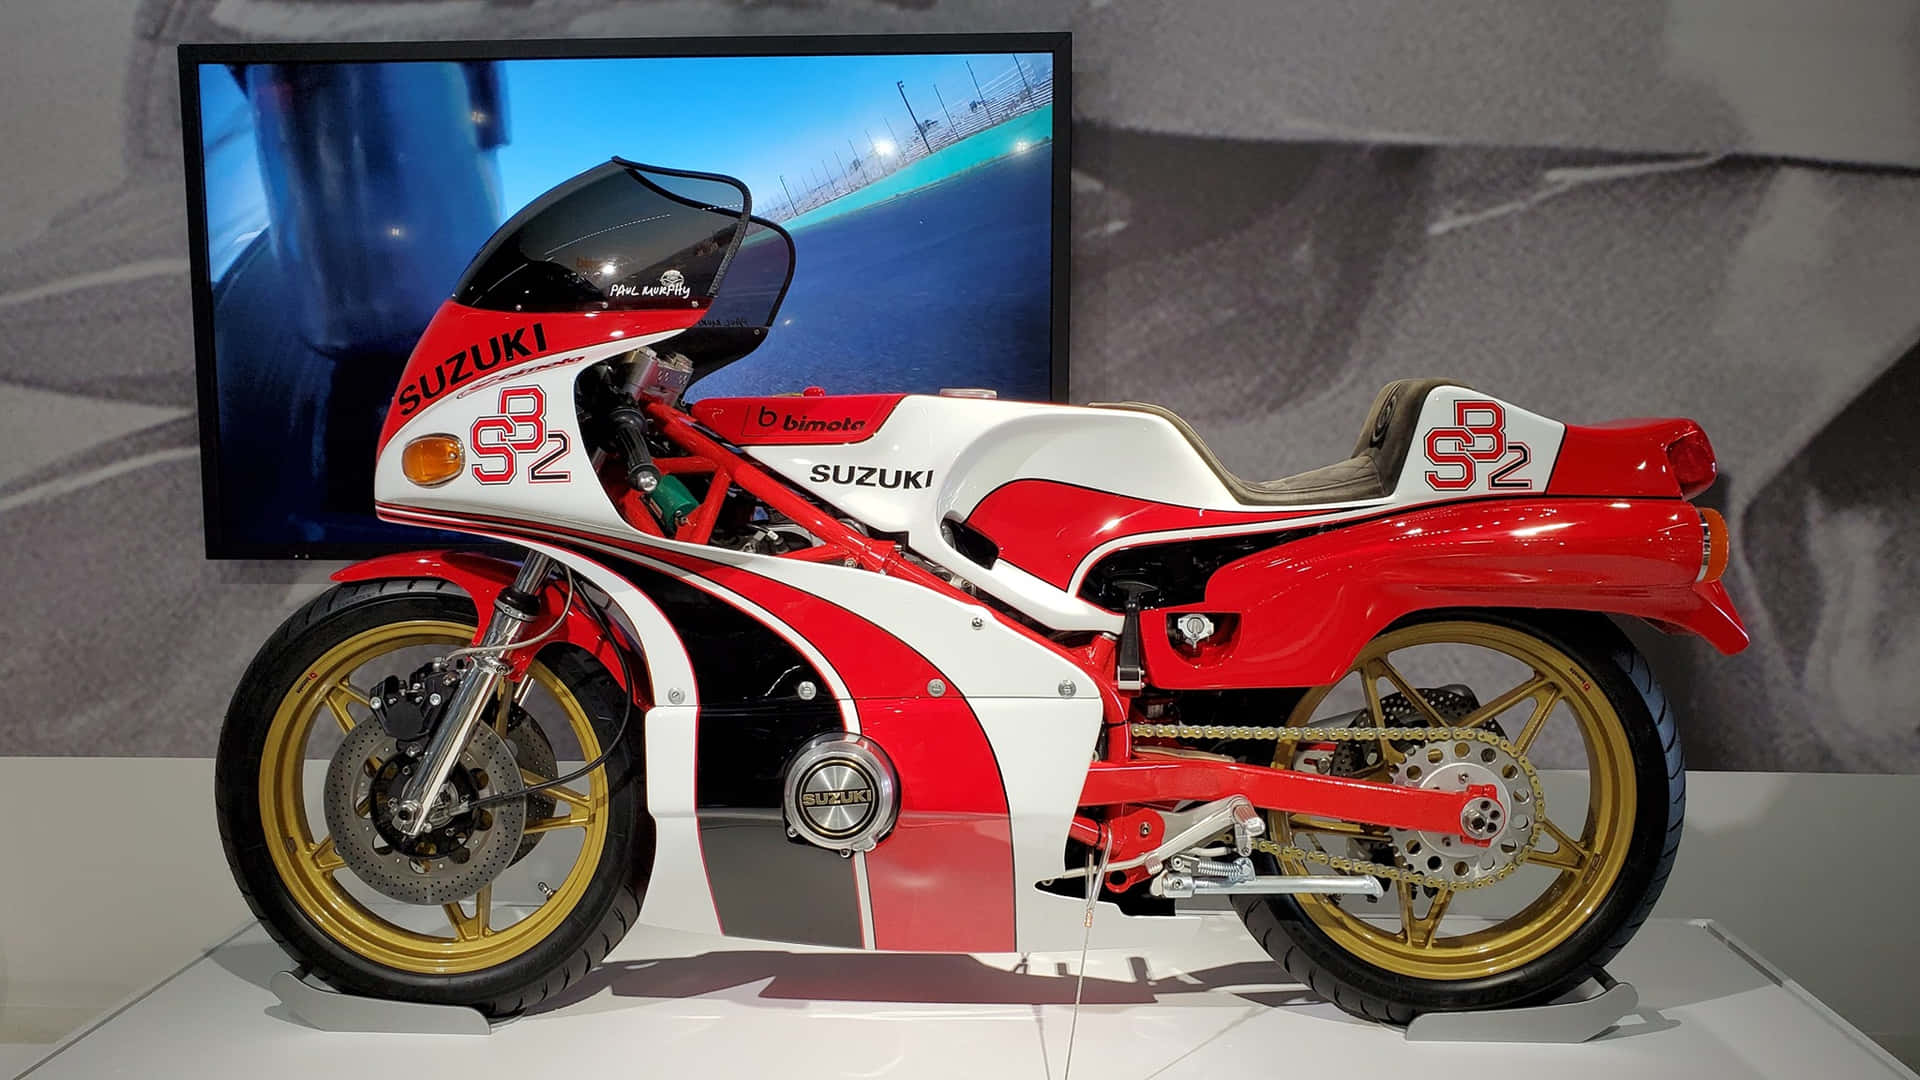 Suzuki Racing Motorcycle Exhibit Wallpaper